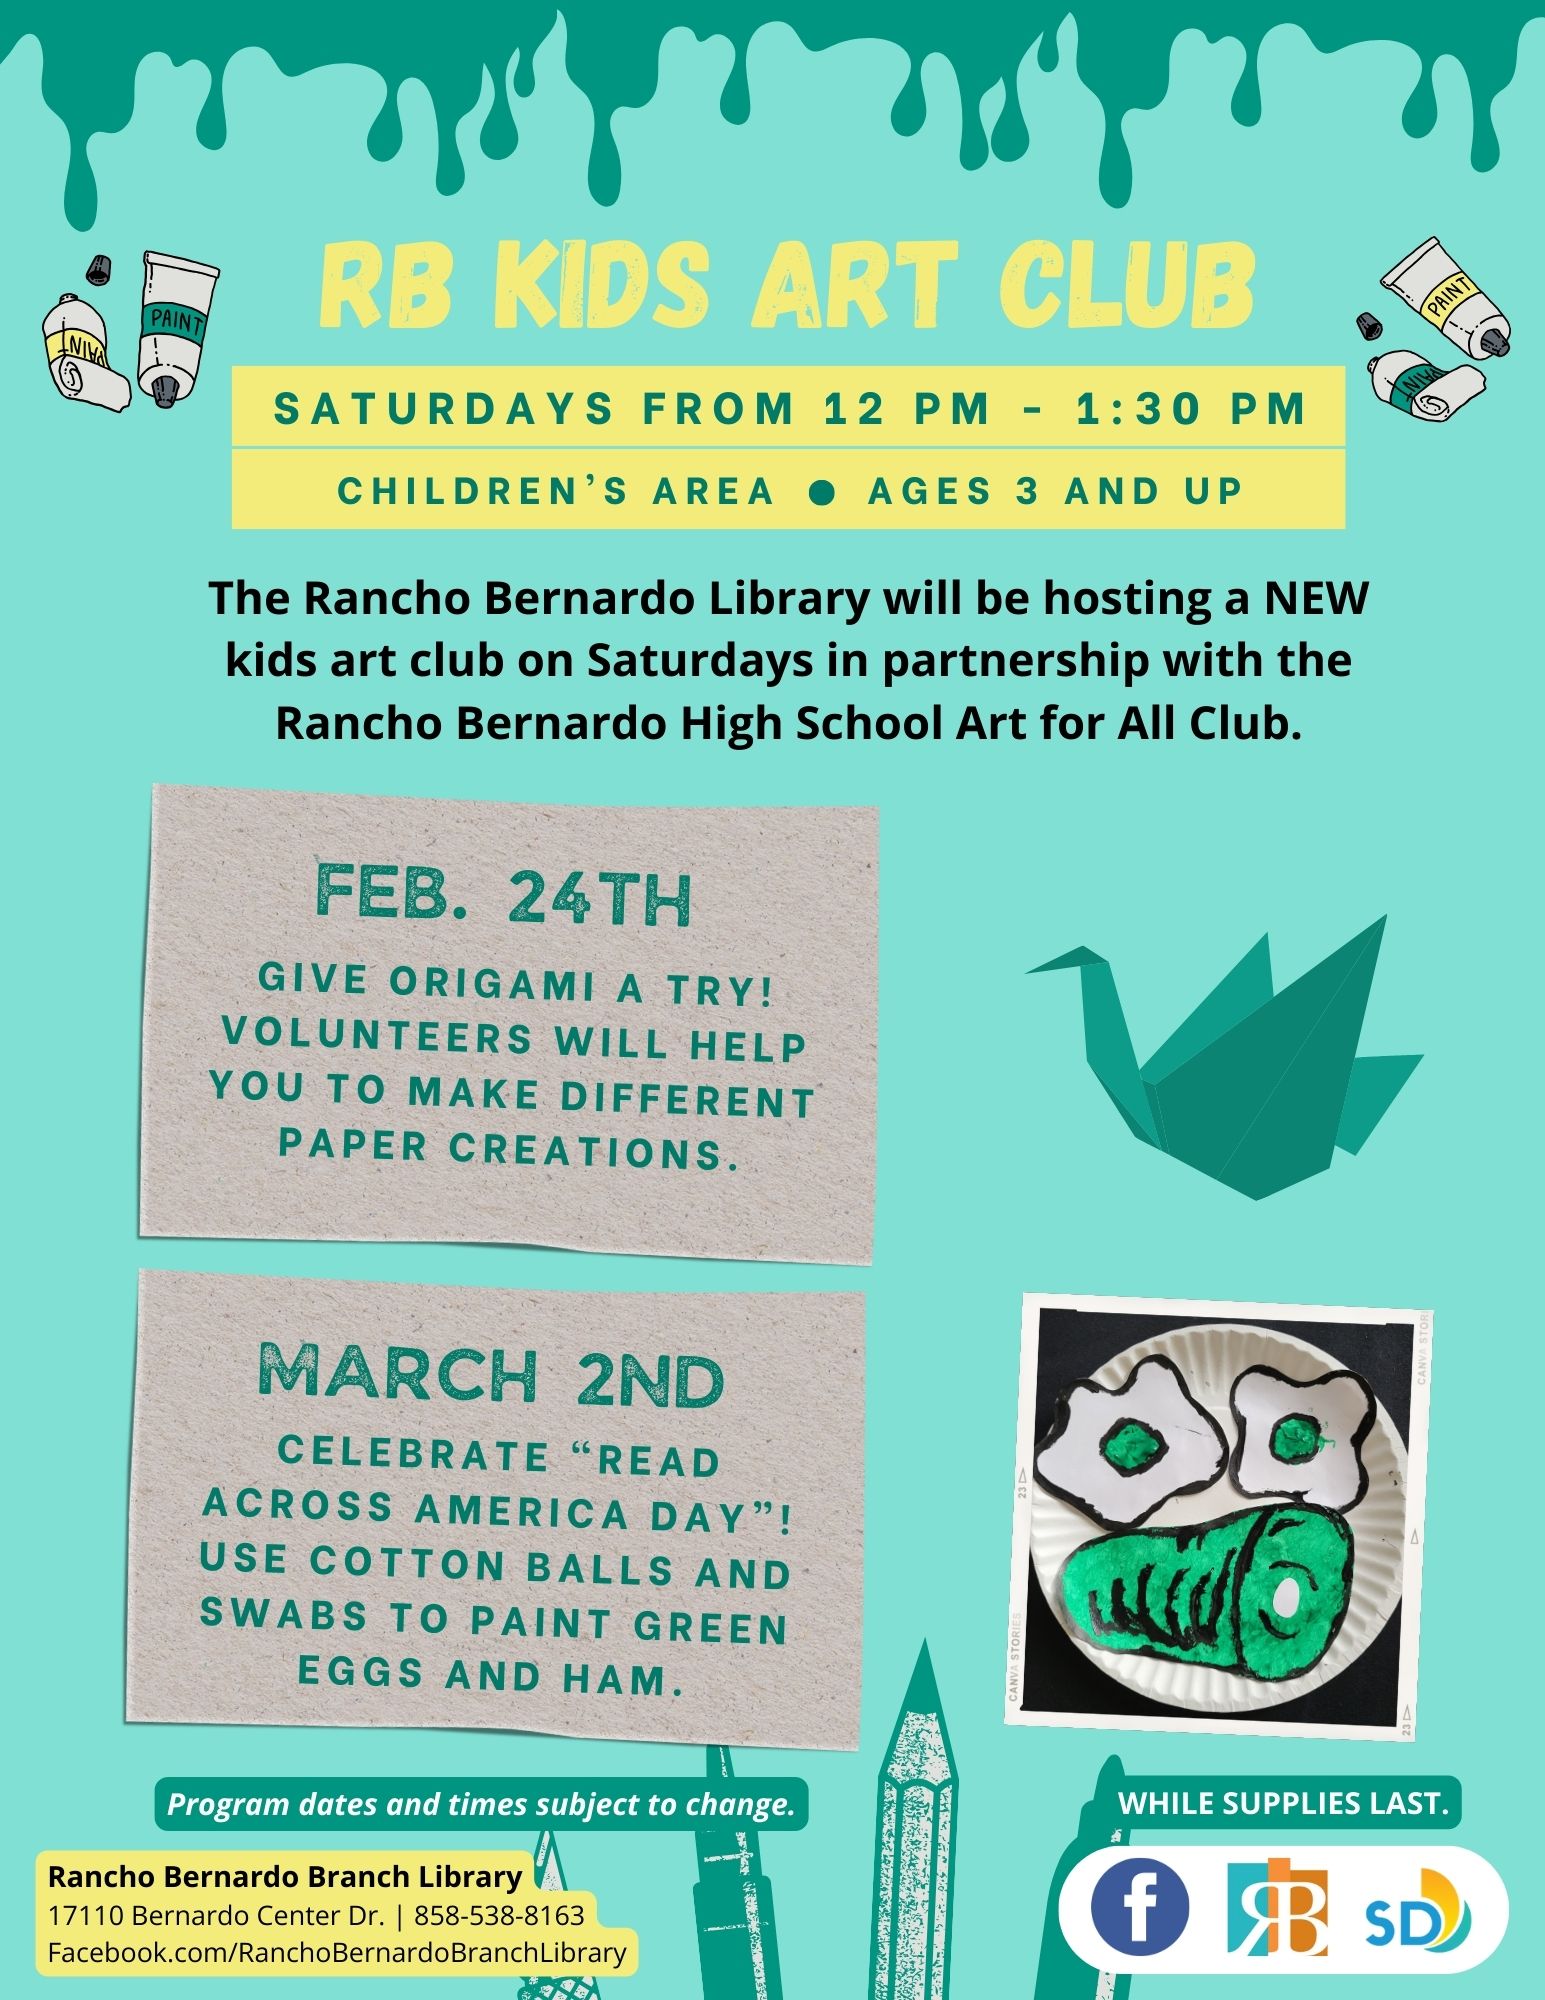 Kids Art Club